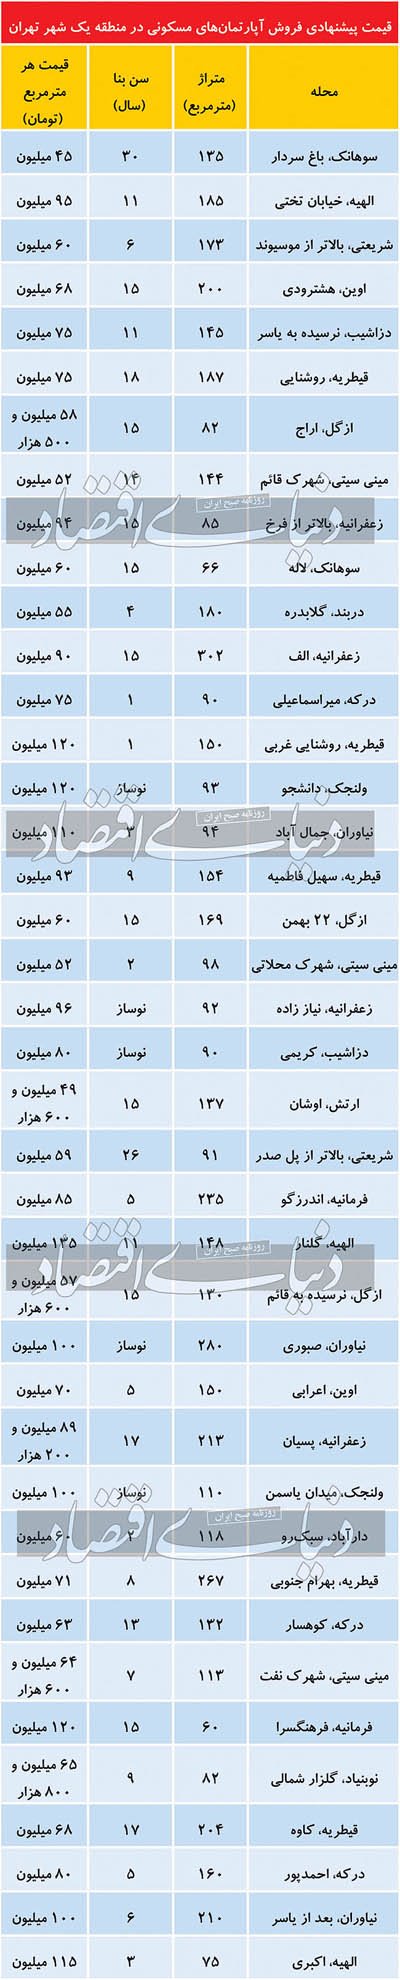 قیمت پیشنهادی آپارتمان در منطقه یک تهران